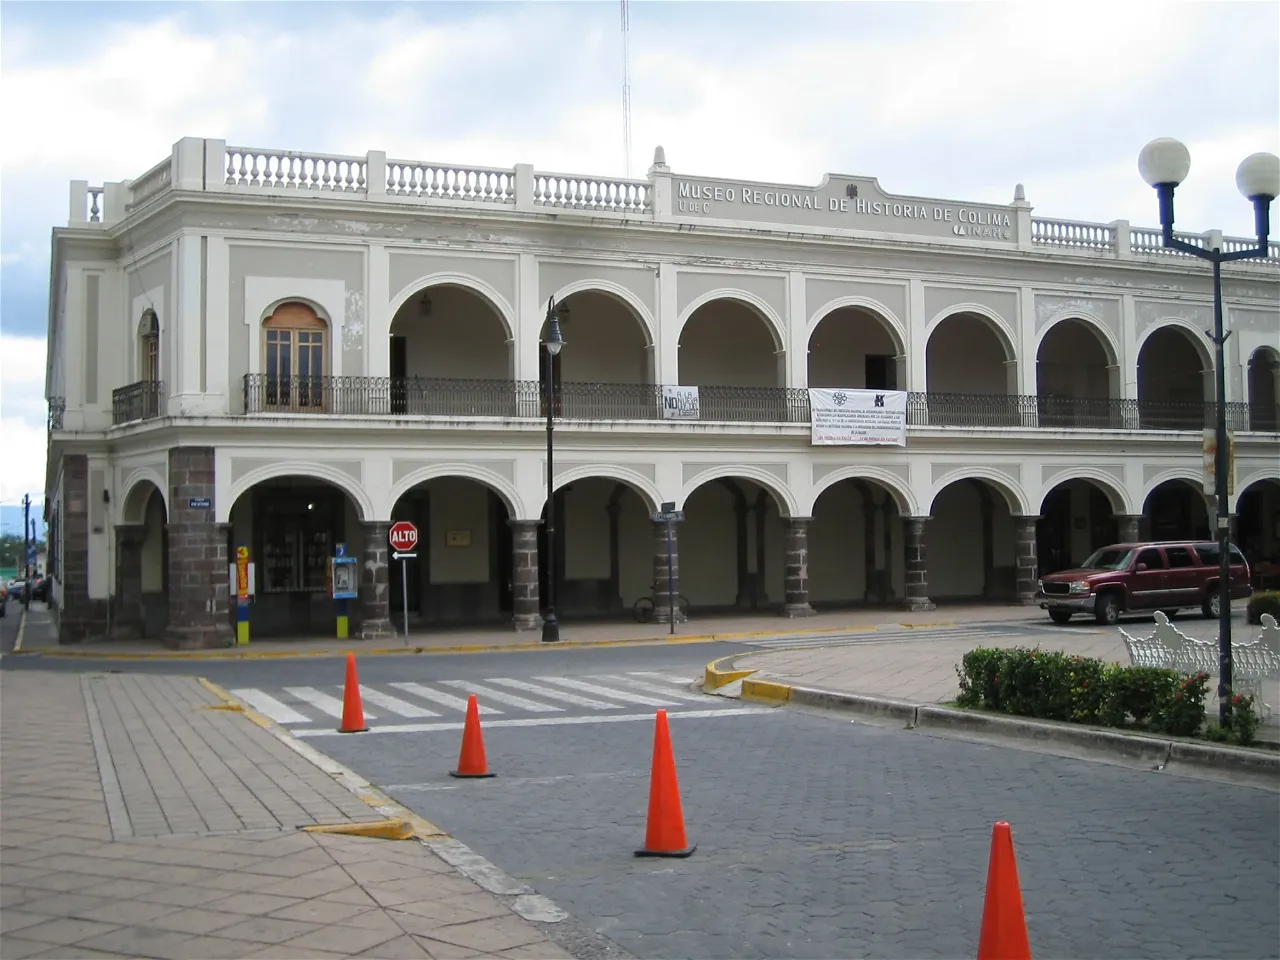 MUSEO REGIONAL DE HISTORIA DE COLIMA COLIMA MEXICO